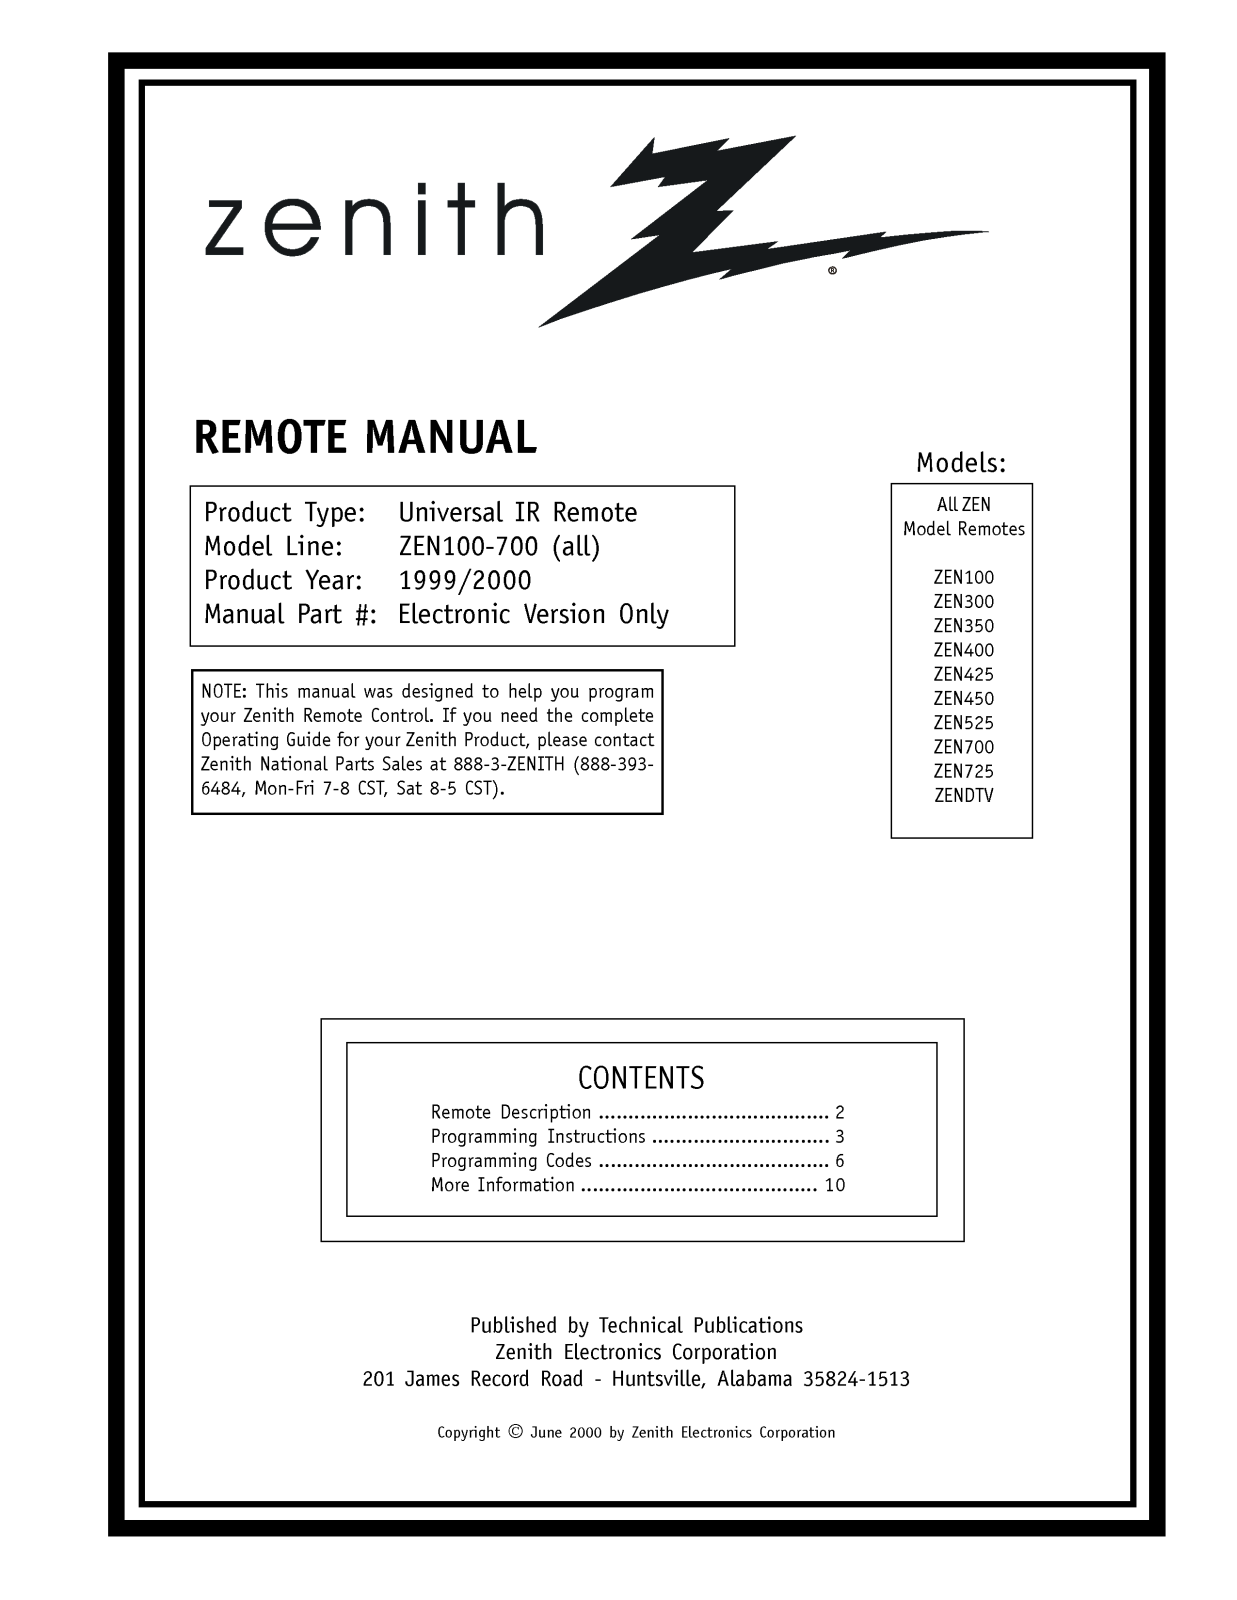 LG ZEN525, ZEN300, ZEN700, ZENDTV, ZEN400 Manual